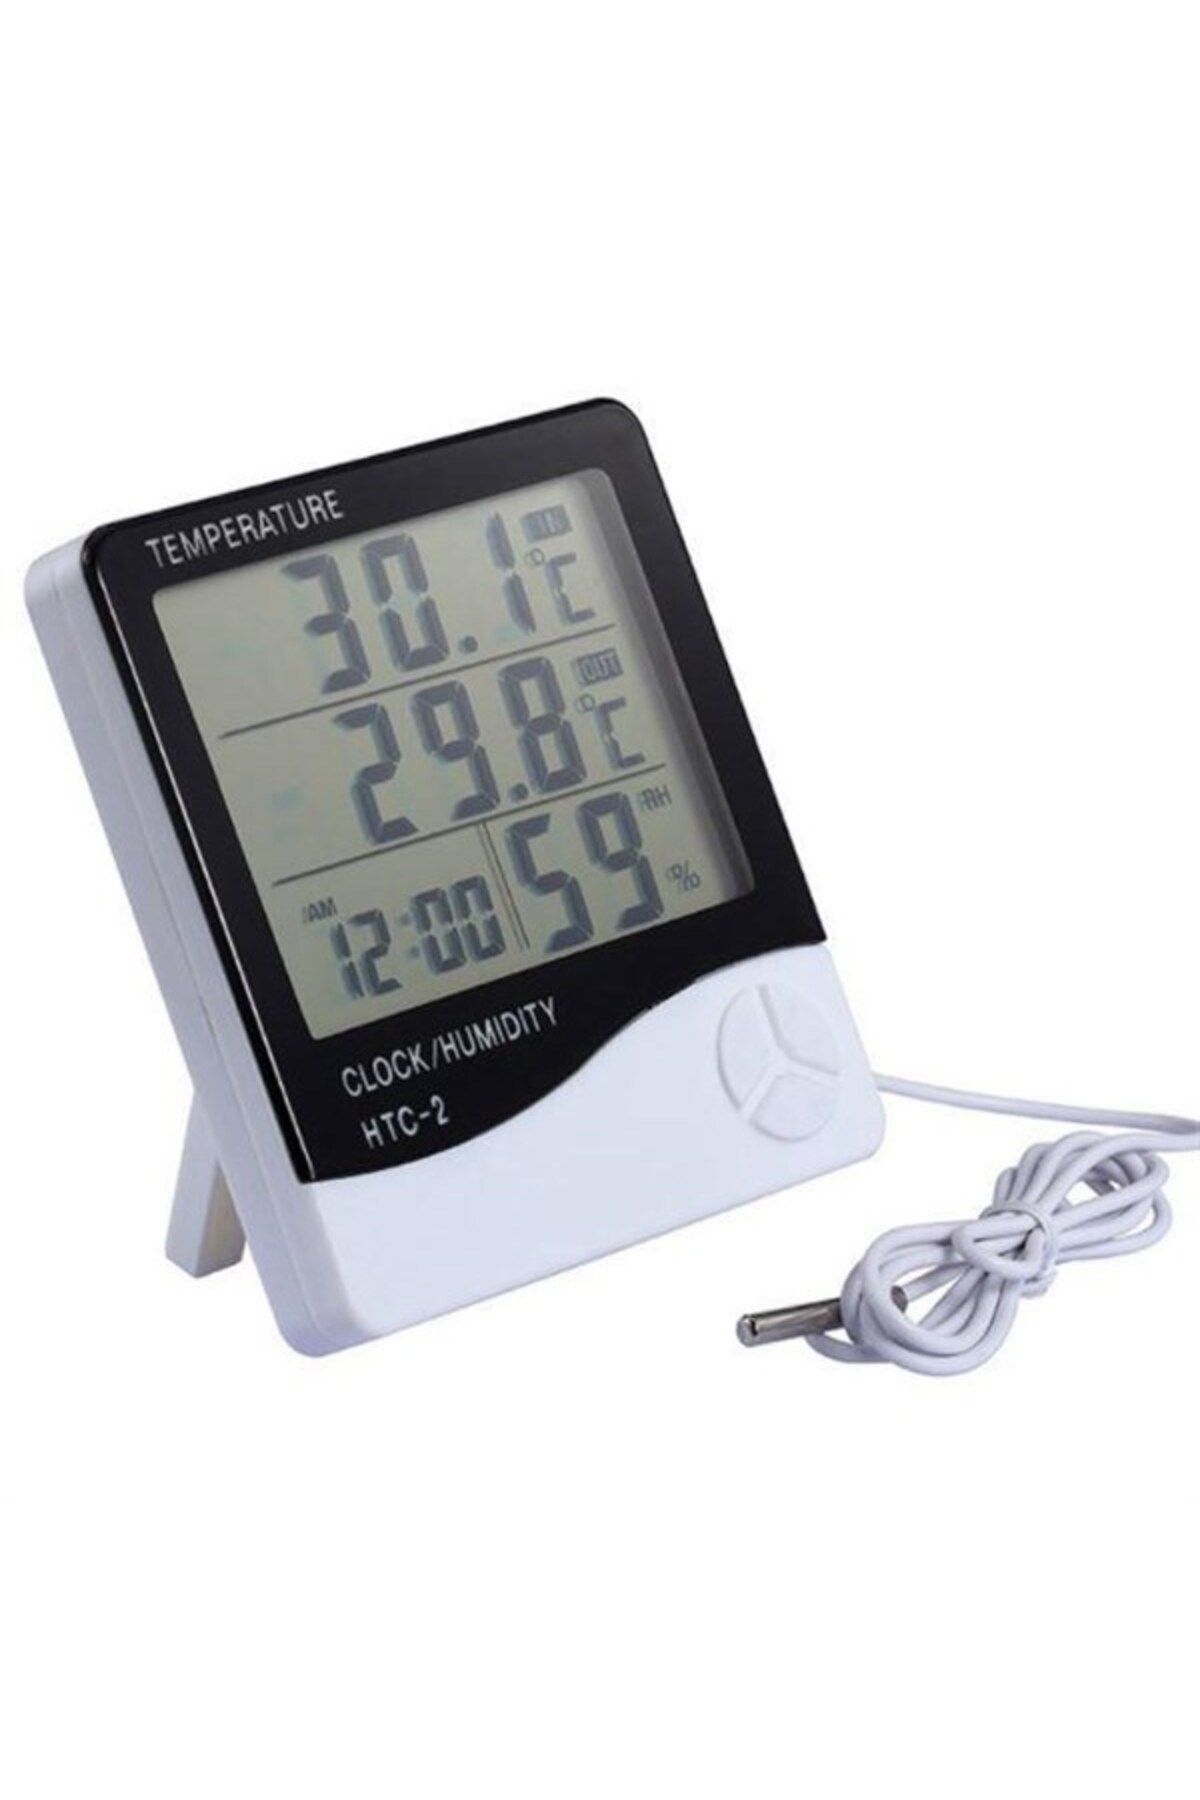 Genel Markalar Dijital Termometre Isı Sıcaklık Nem Ölçer Saat Alarm (4434)